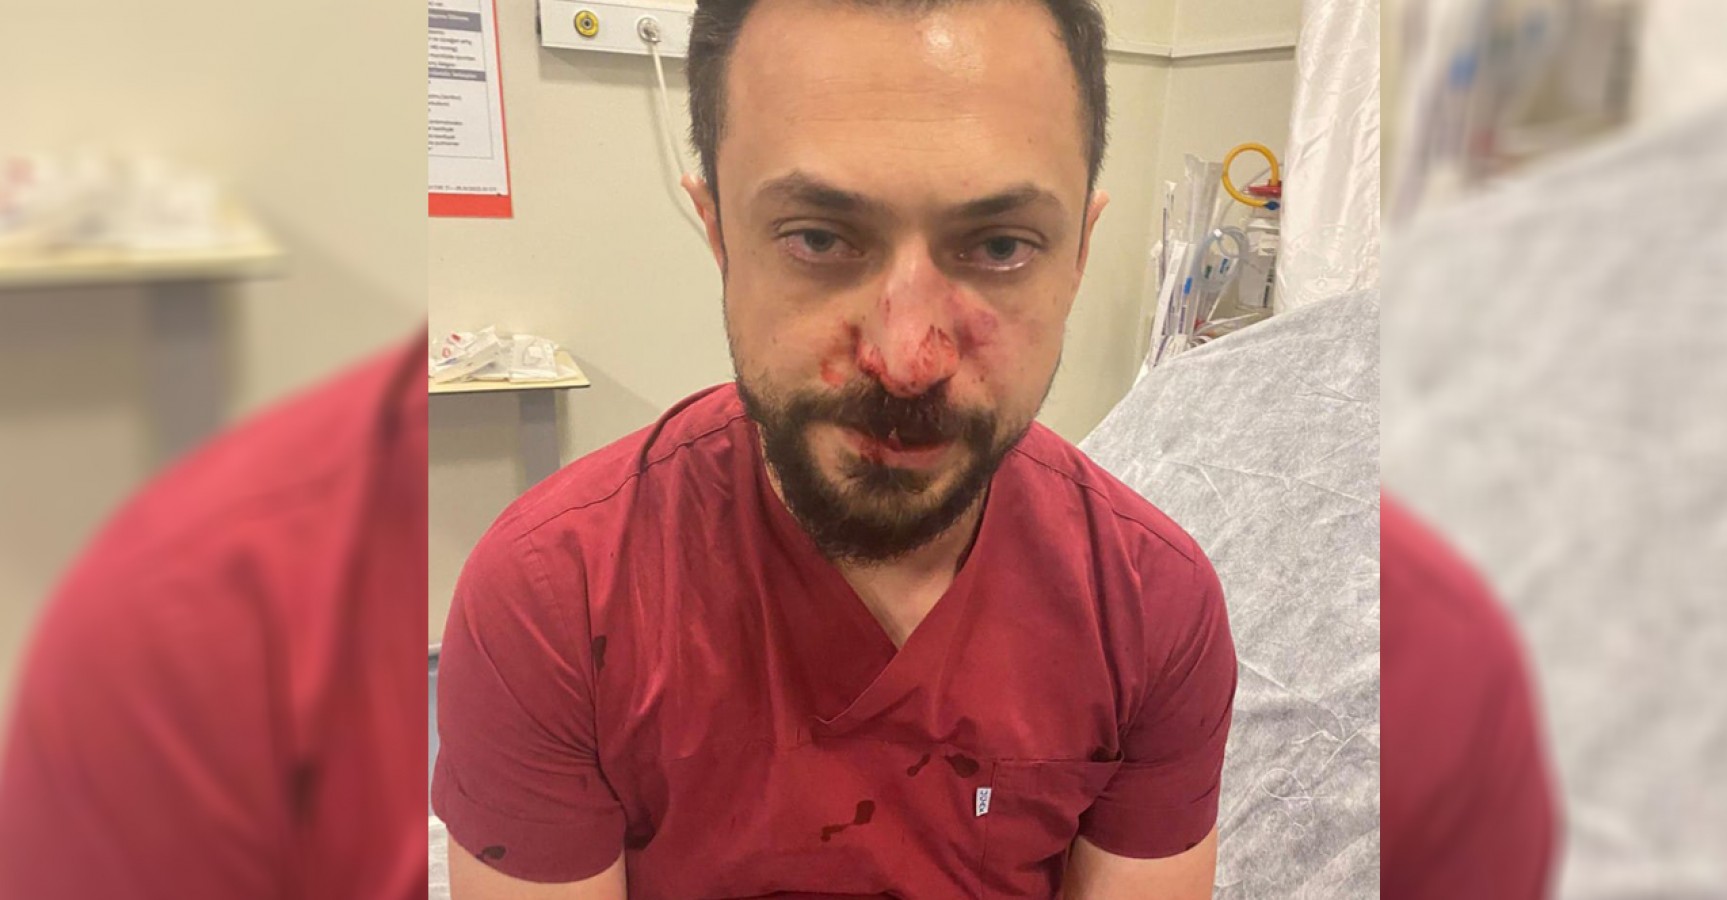 Urfa'da aynı doktora ikinci kez saldırı! Bu kez burnu kırıldı...;